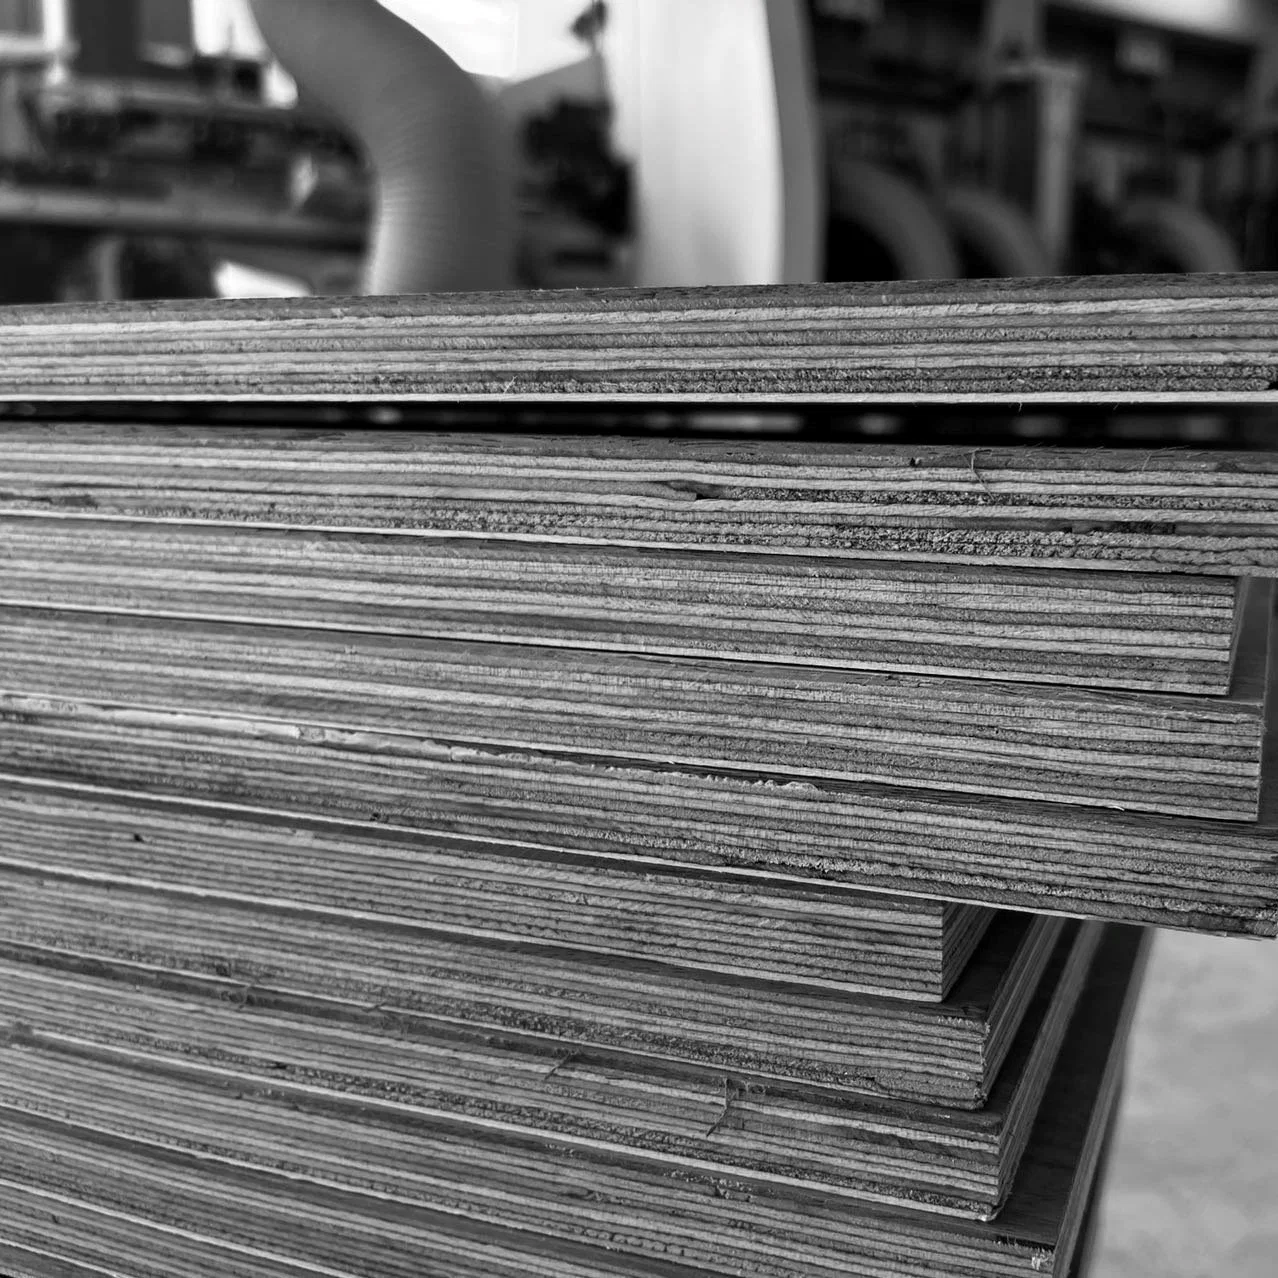 أرضية من الخشب الصلب ABCD من الخشب الصلب أرضية خشبية مصقولة متعددة الطبقات من البلوط أرضية خشبية صلبة من الرخام الخشب